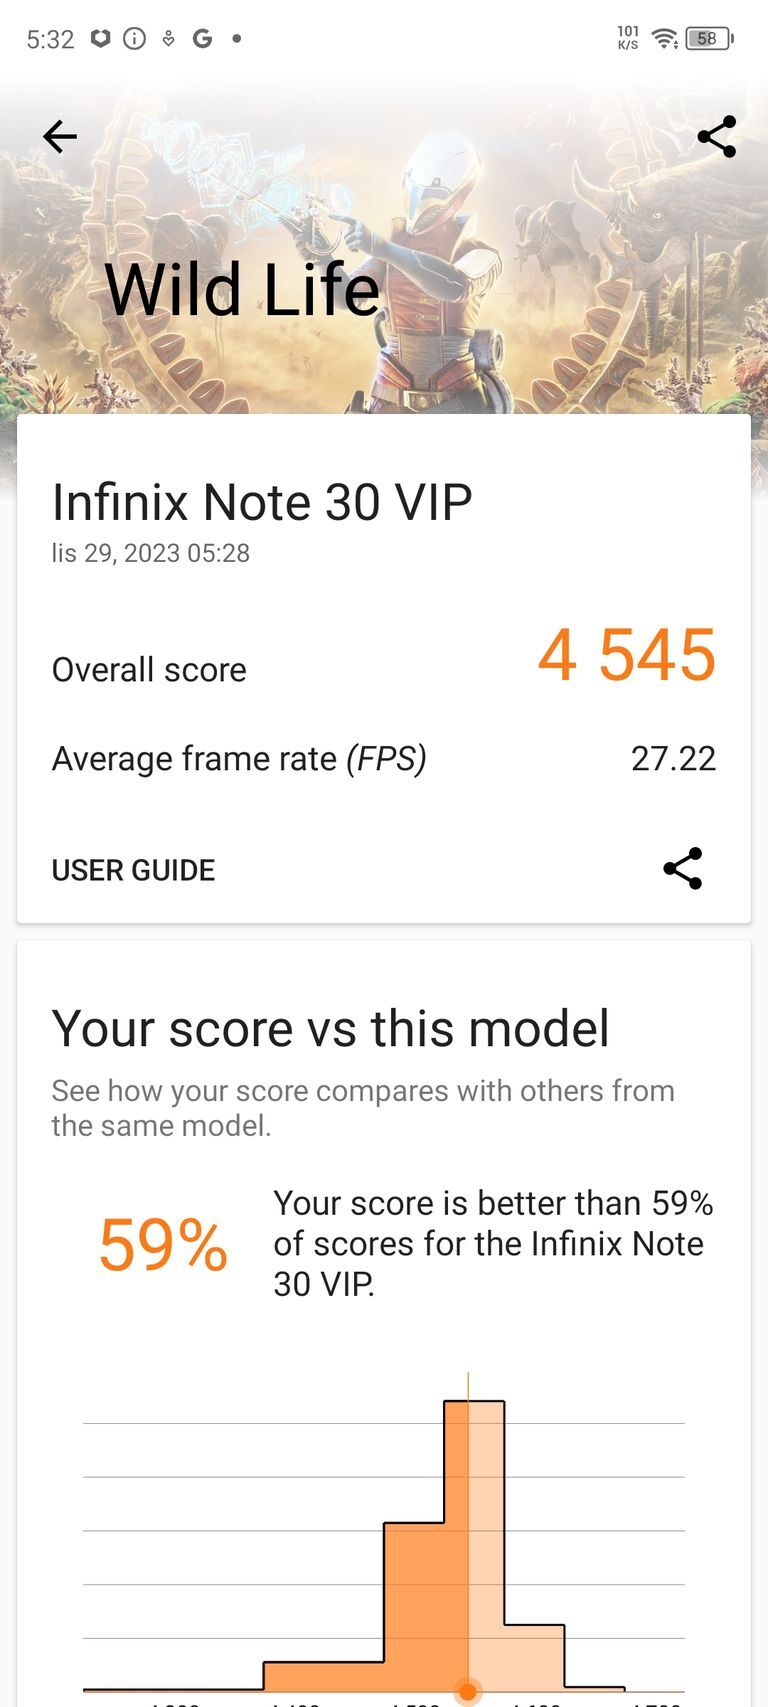 Infinix Note 30 VIP